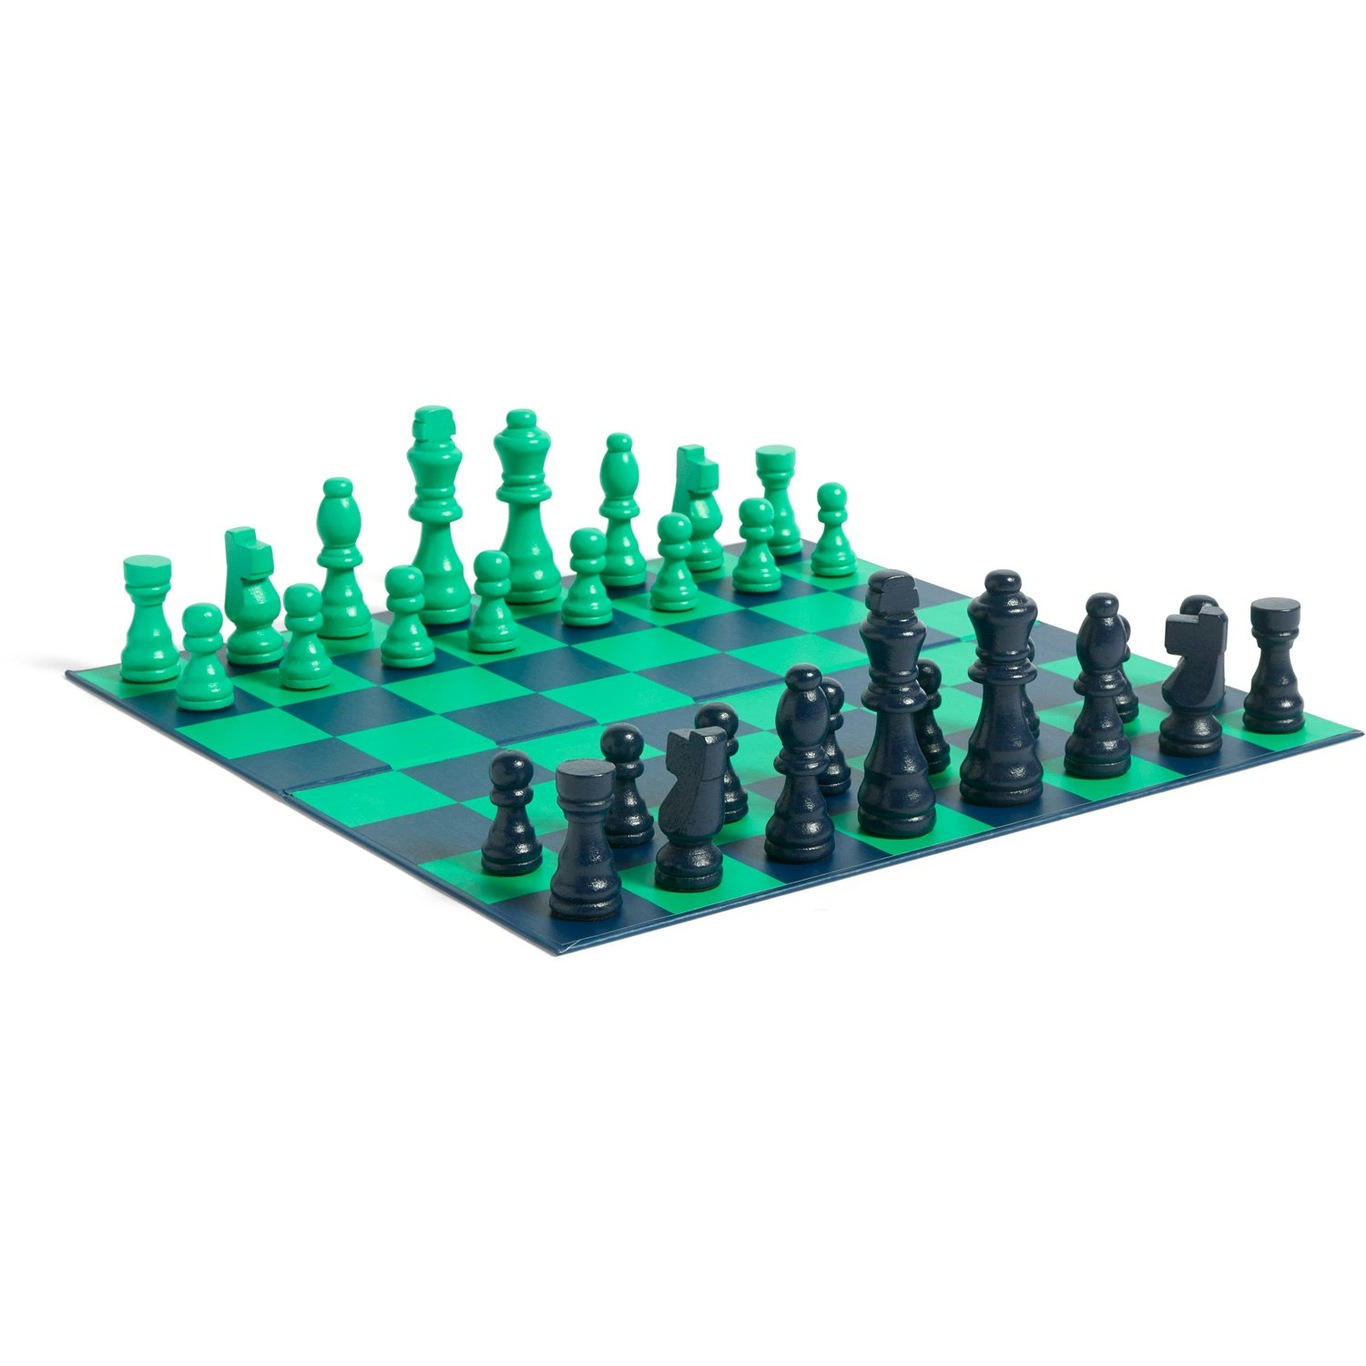 PLAY Chess Spel, Groen